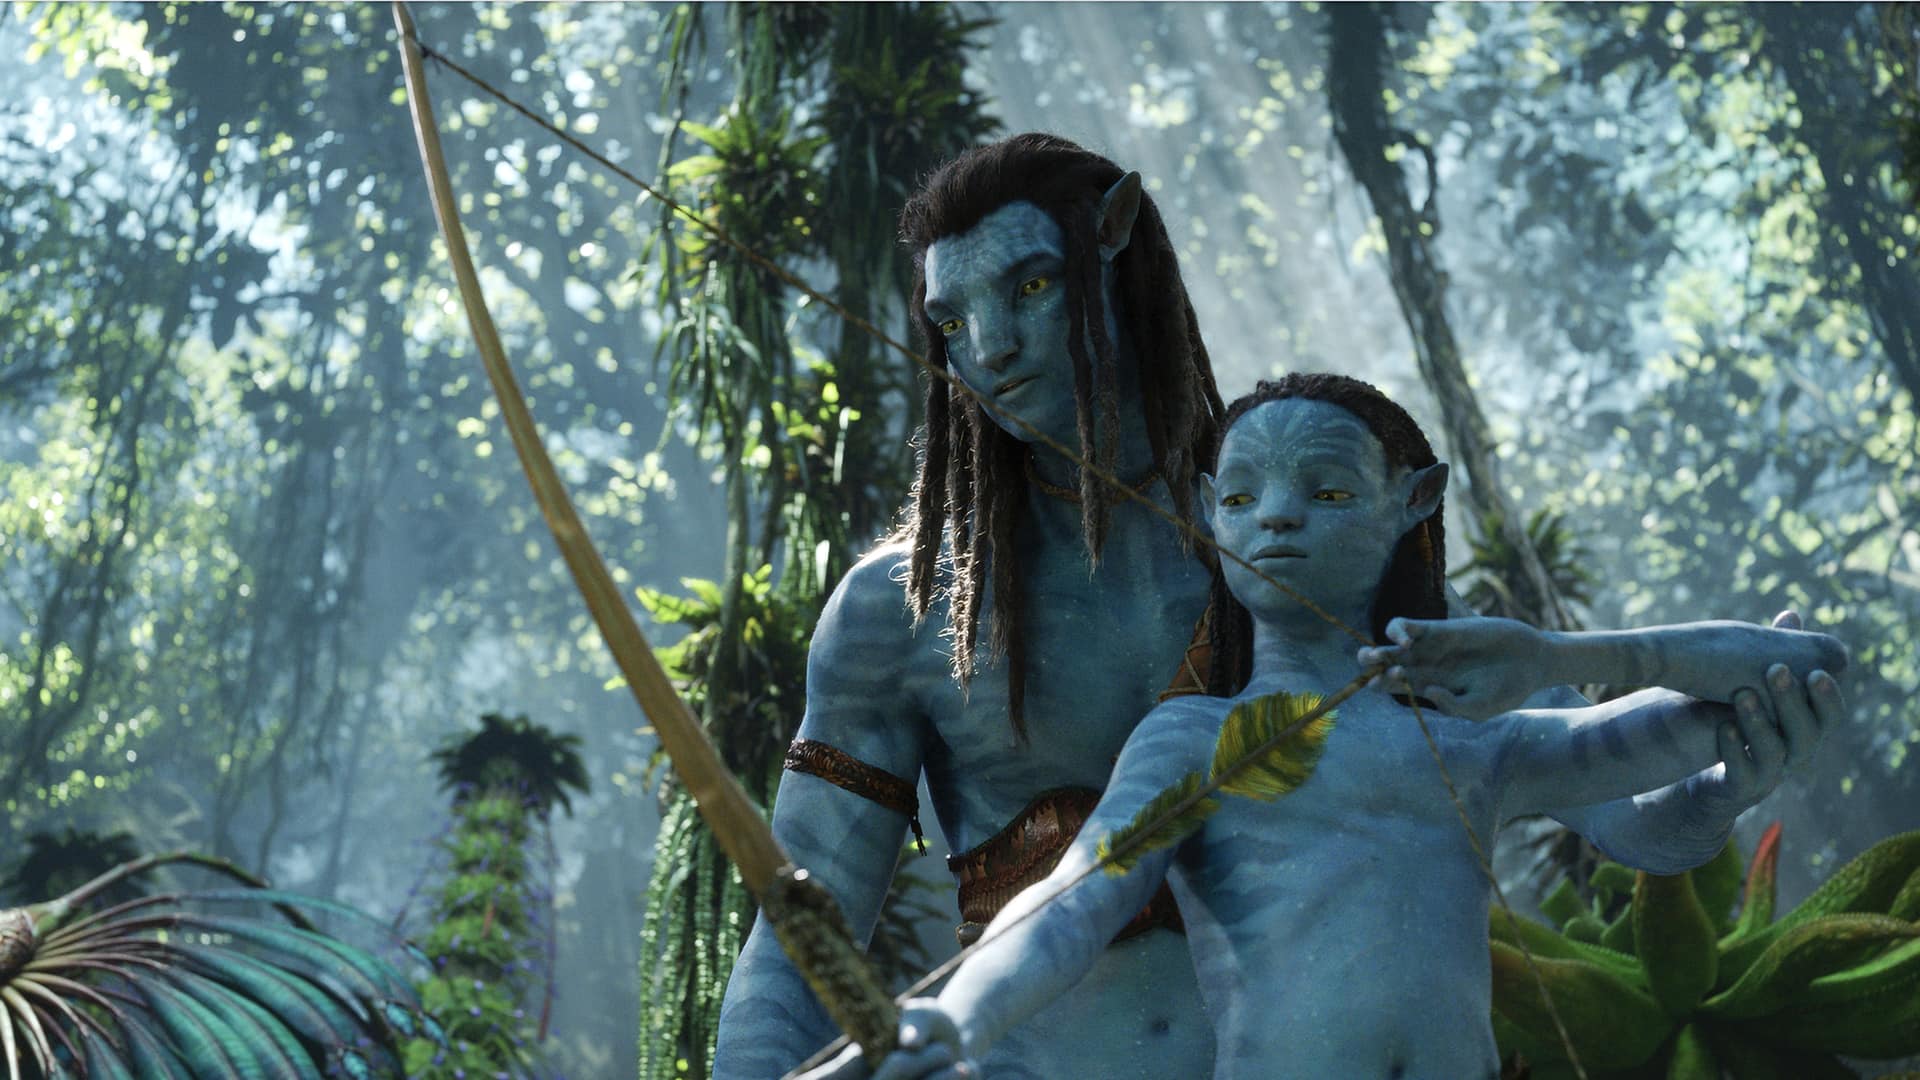 Szenenbild aus dem Film Avatar 2: Ein Mann und ein Kind mit Pfeil und Bogen im Wald. (Foto: Disney)